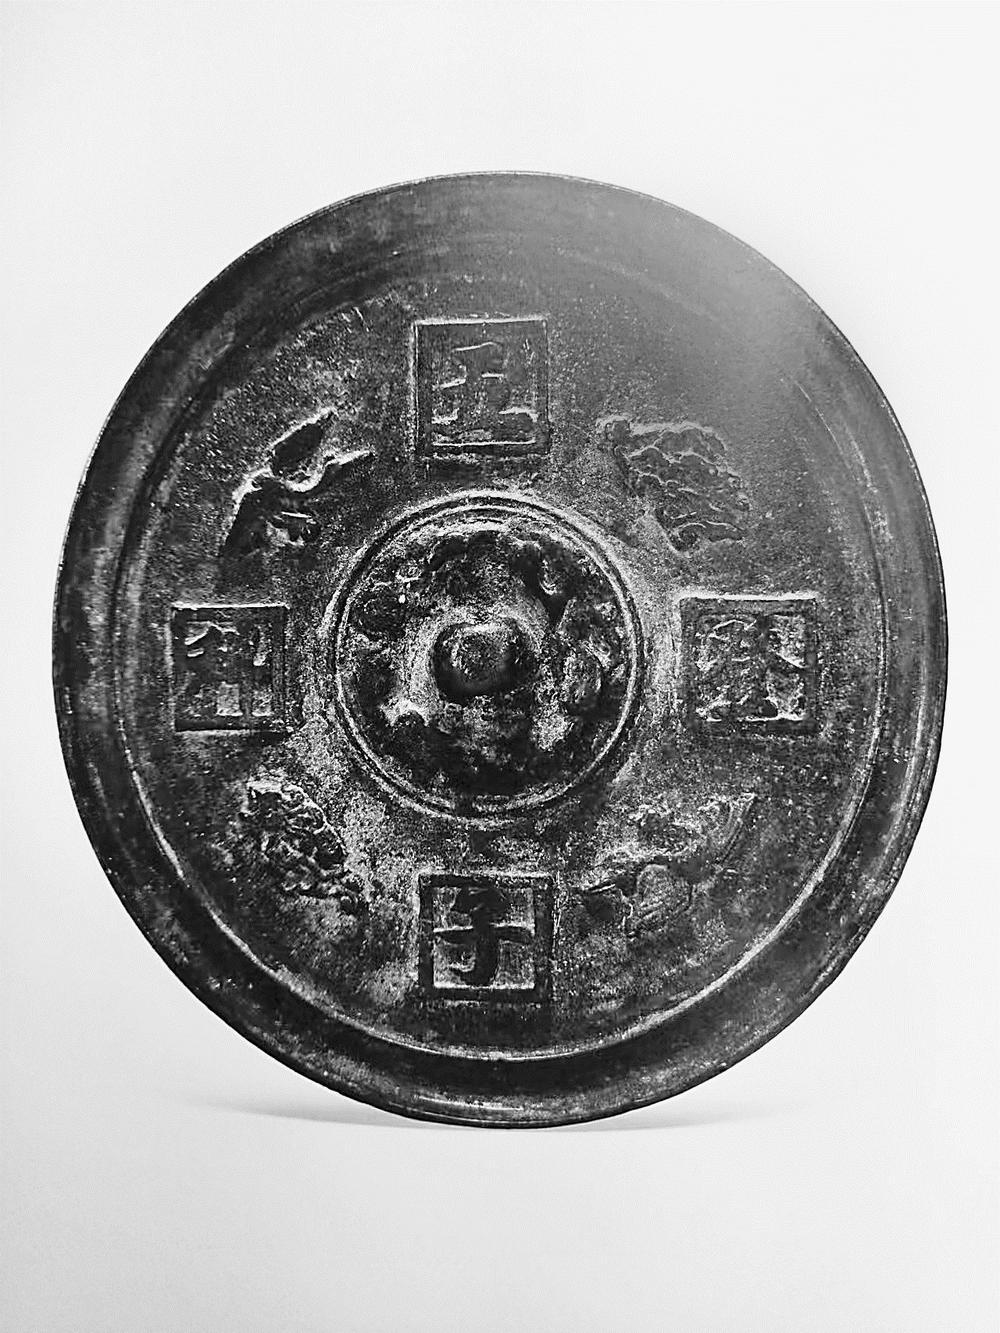 明五子登科铭文镜武汉博物馆收藏有一枚明代五子登科铜镜,直径18